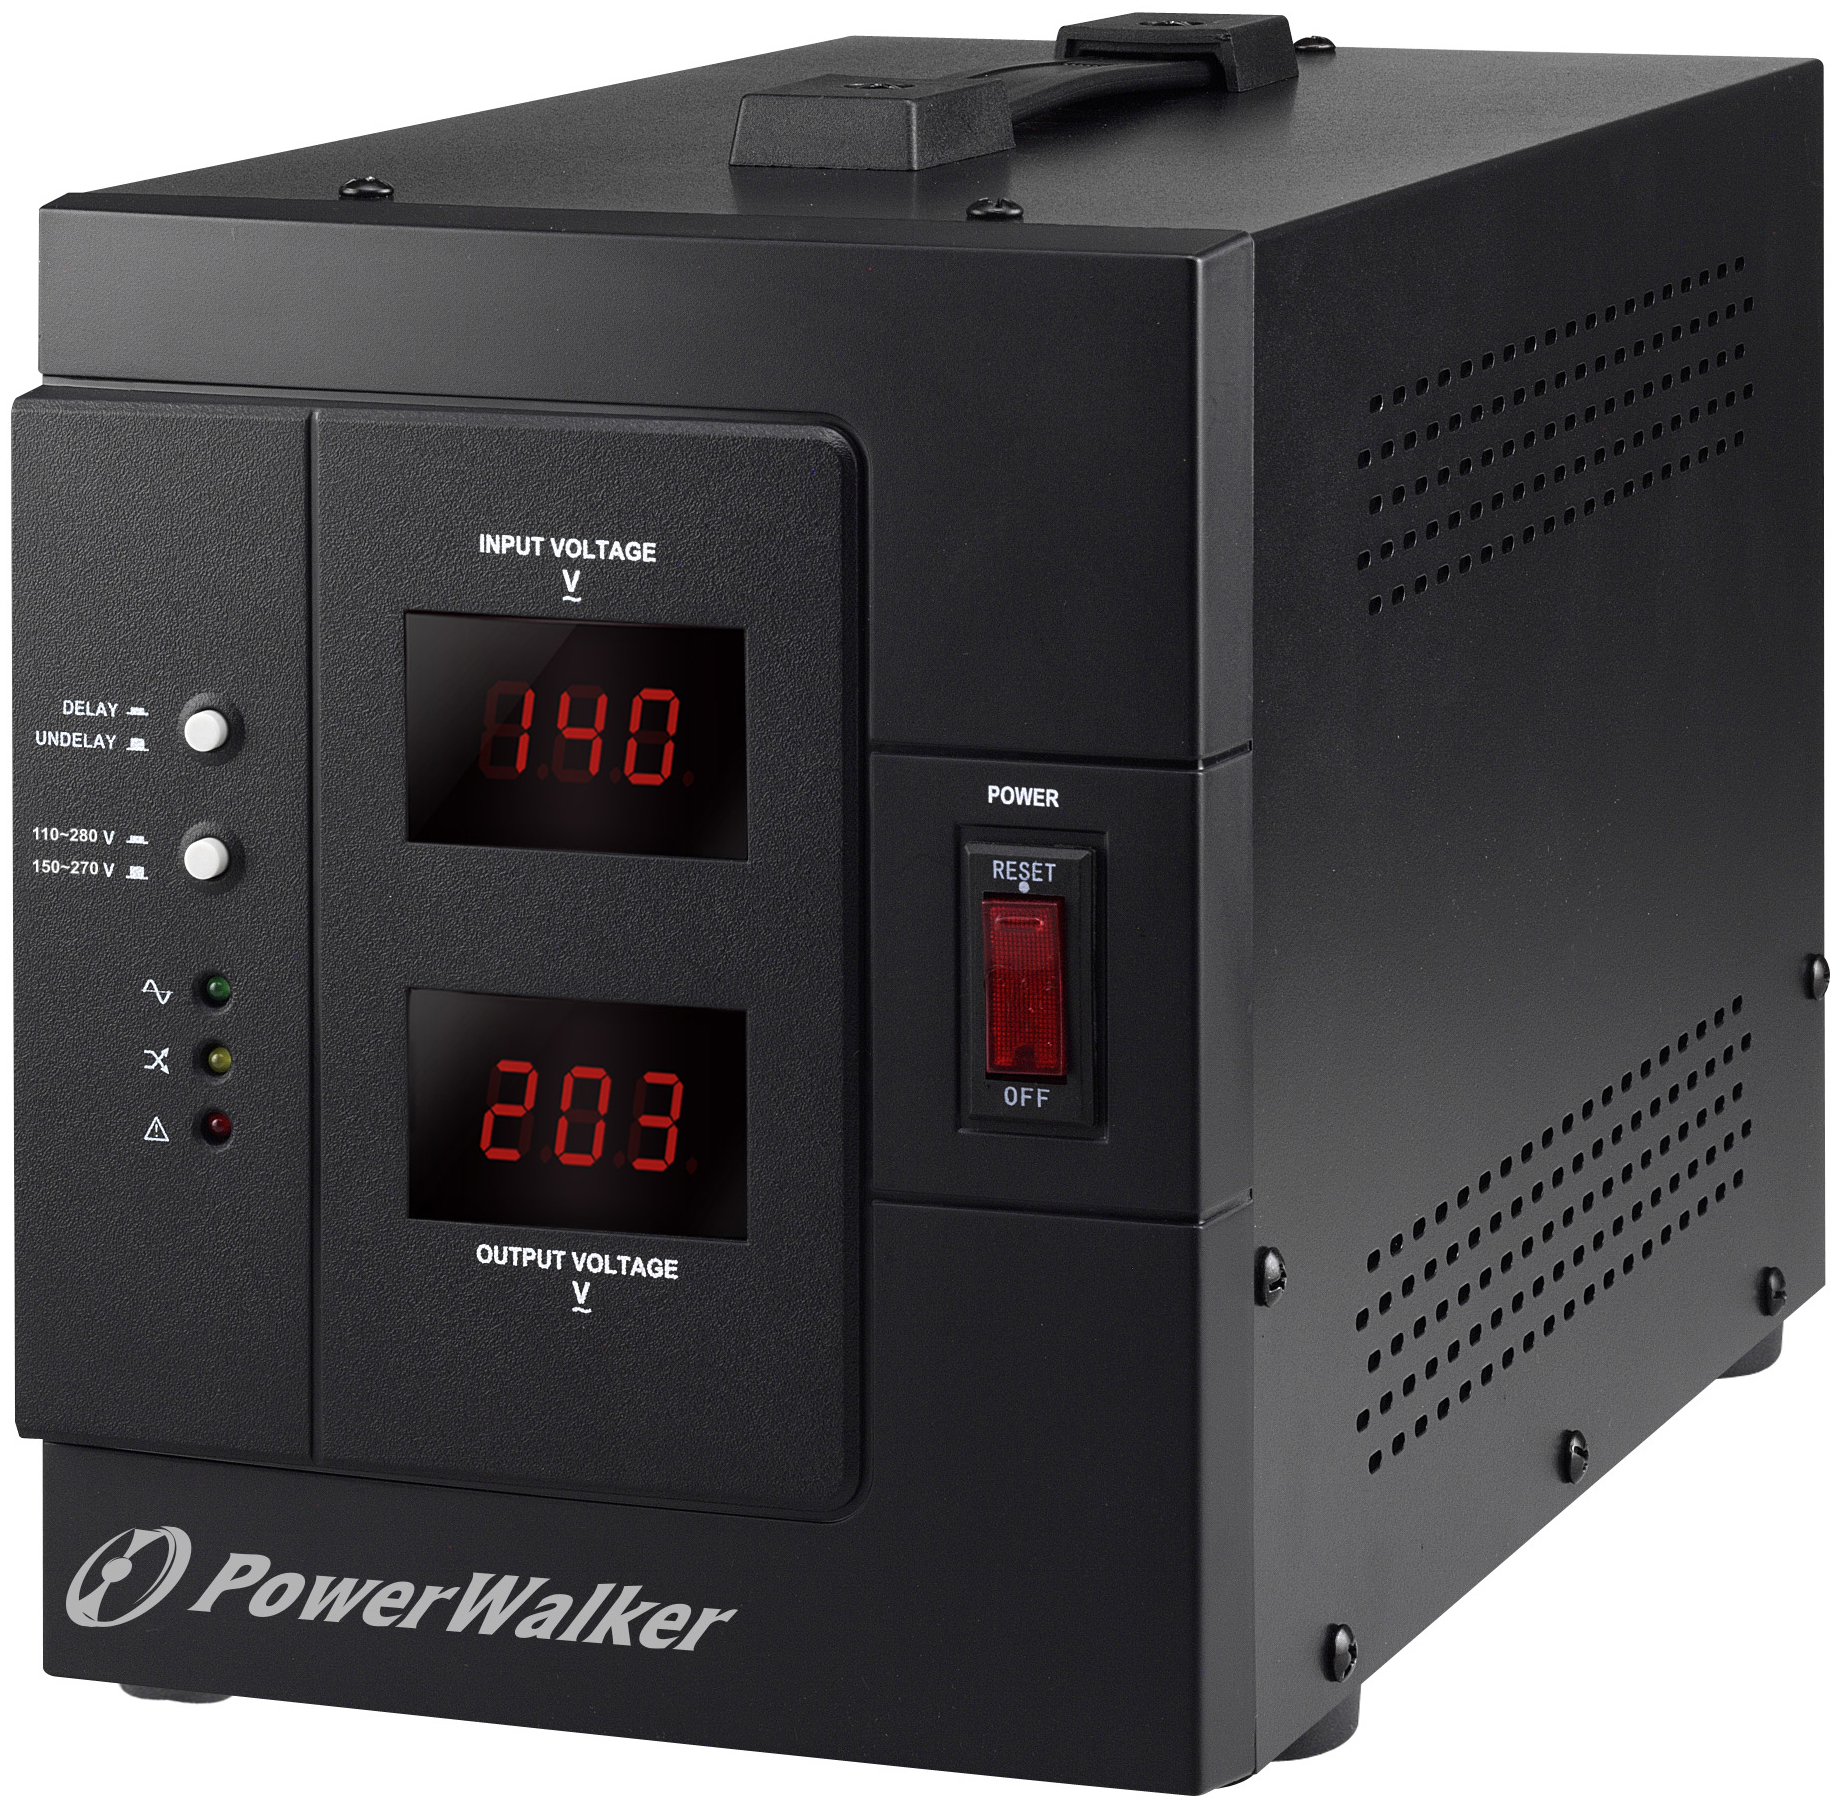 | POWERWALKER 3000 2400W, AVR AVR SIV